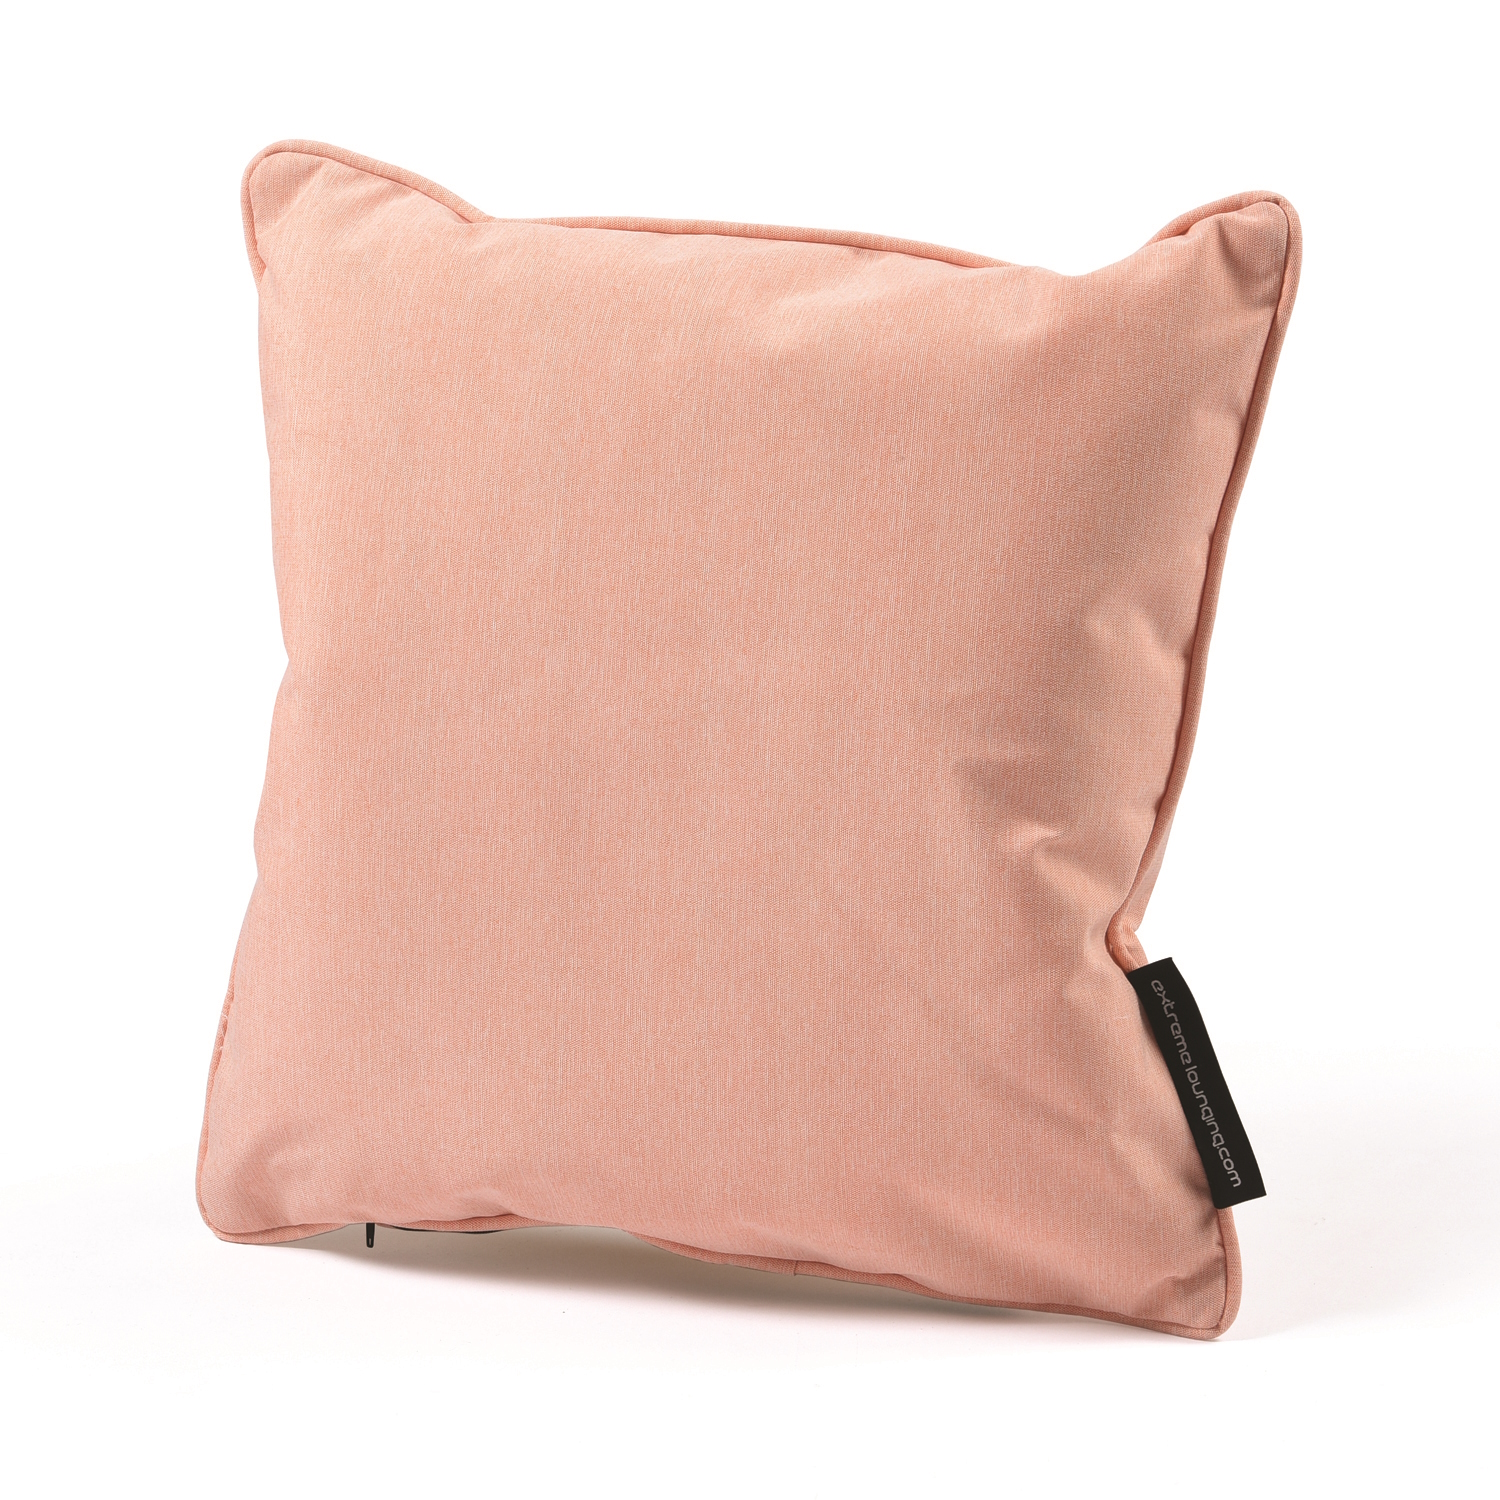 b-cushion extreme lounging Kissen Pastellorange 40x40cm leicht wasserabweisend pflegeleicht UV-beständig 